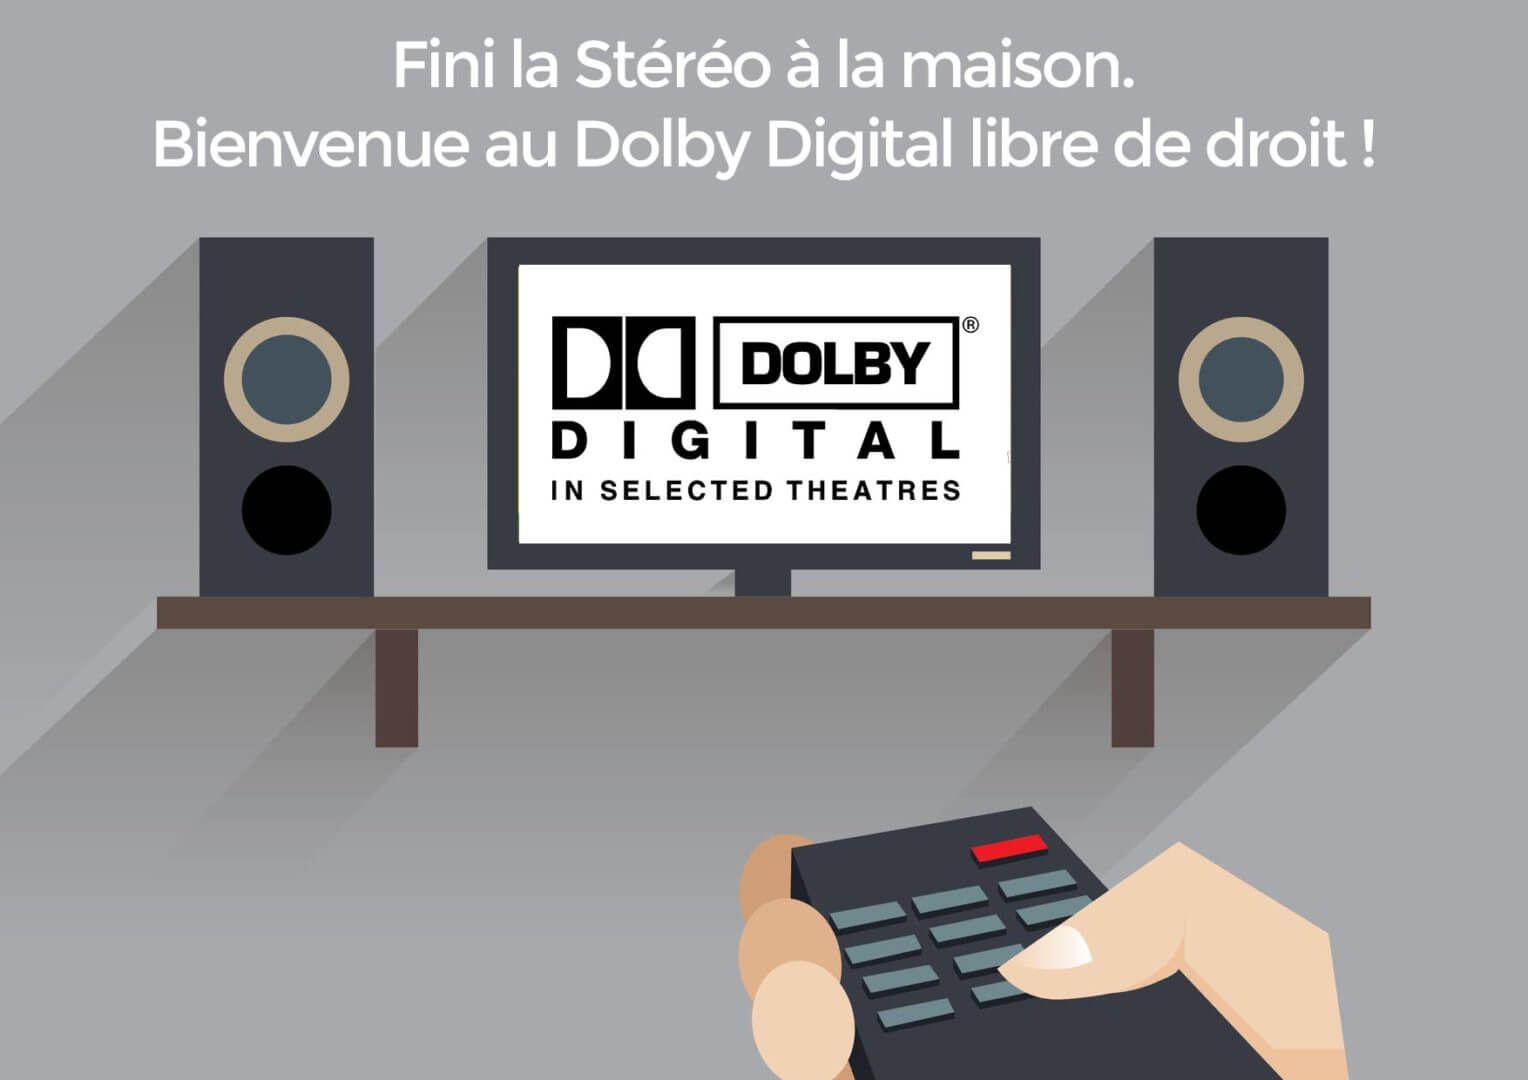 Le Dolby Digital devient libre de droits en 2017 !